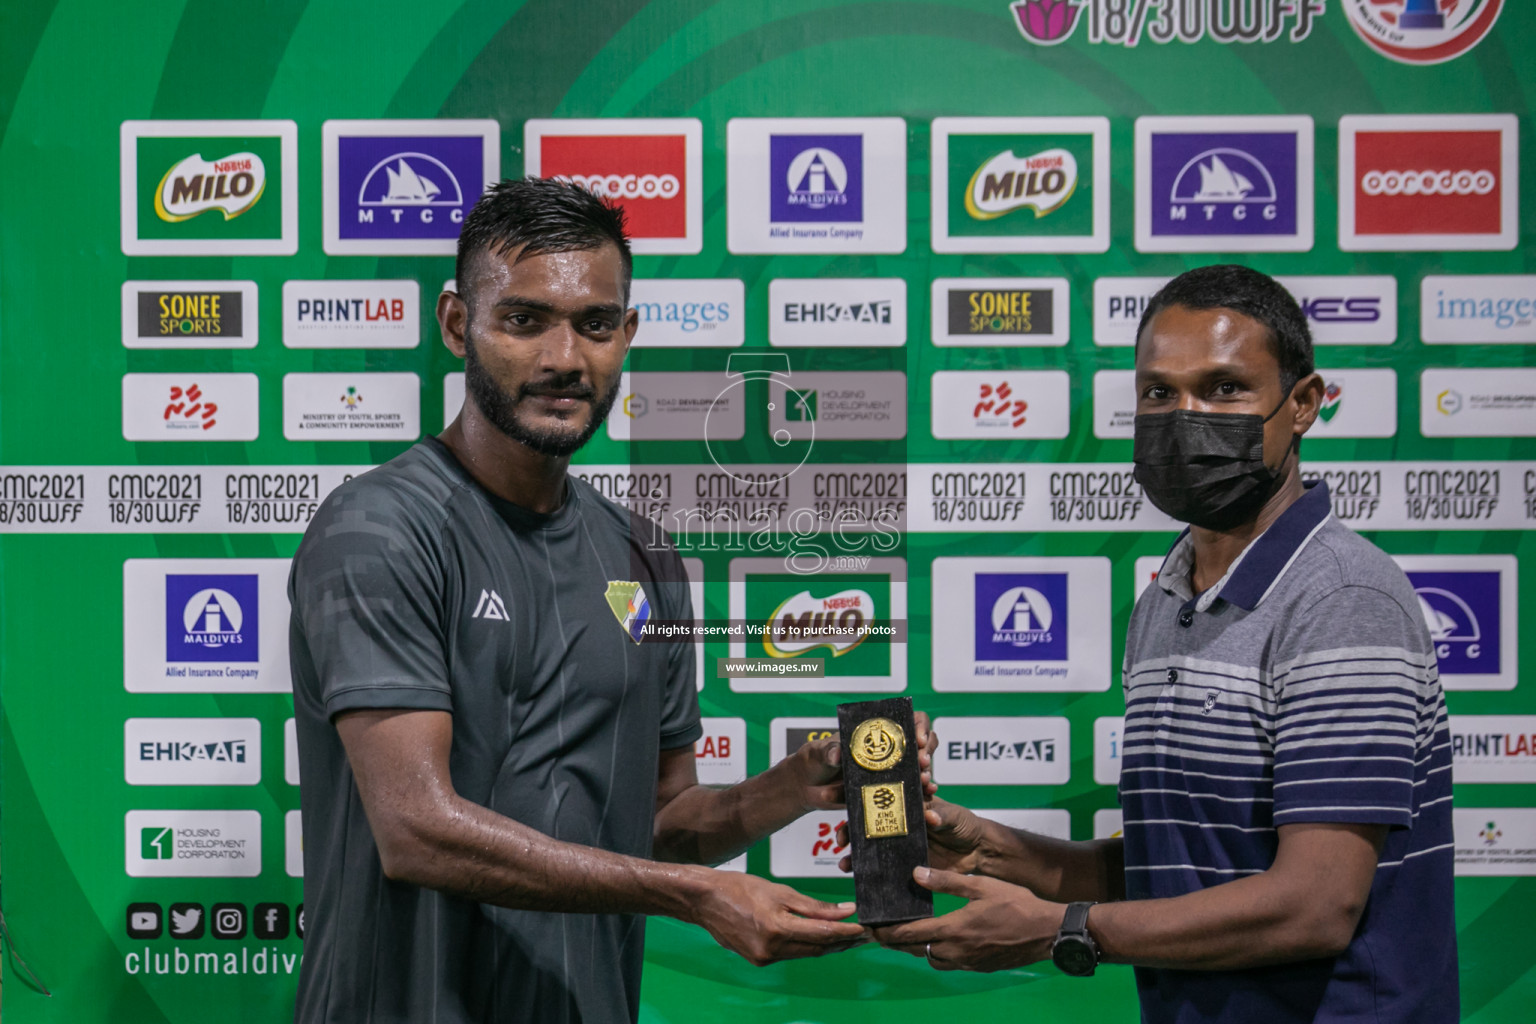 Club Maldives Day 6 - 26th November 2021, at Hulhumale. Photos by Nasam / Images.mv